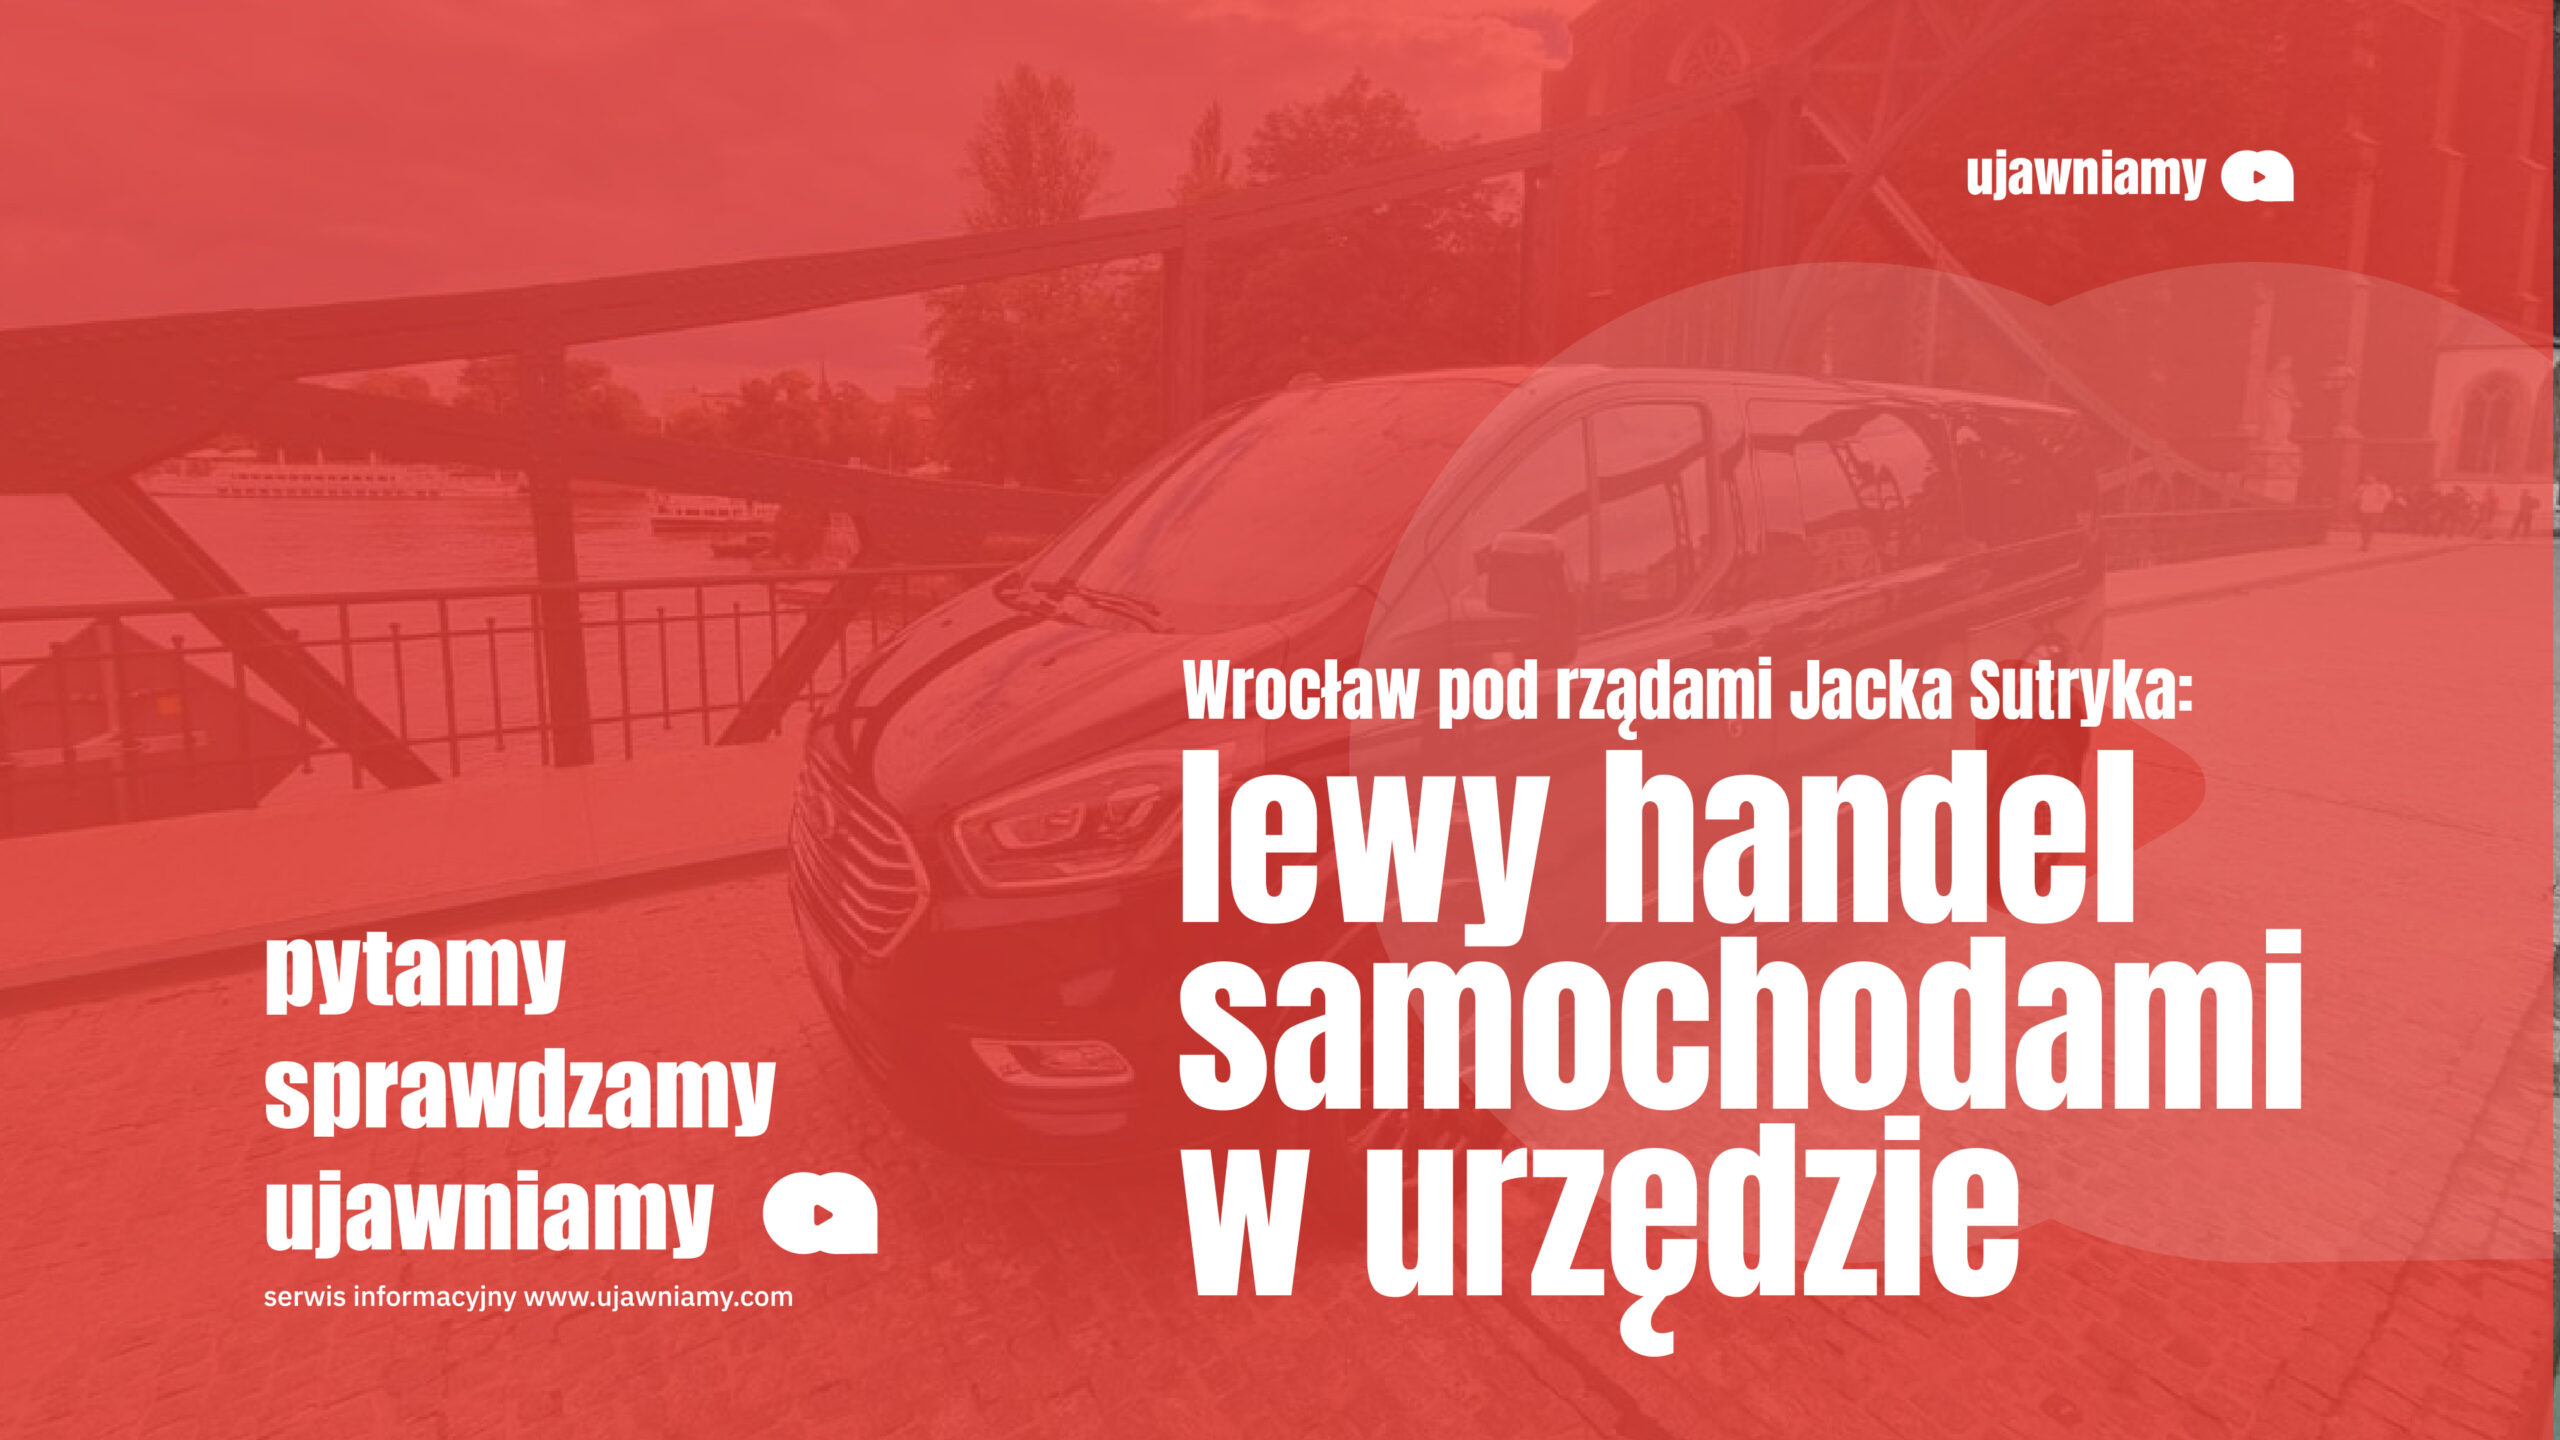 Wrocław Sutryka: lewy handel samochodami w urzędzie